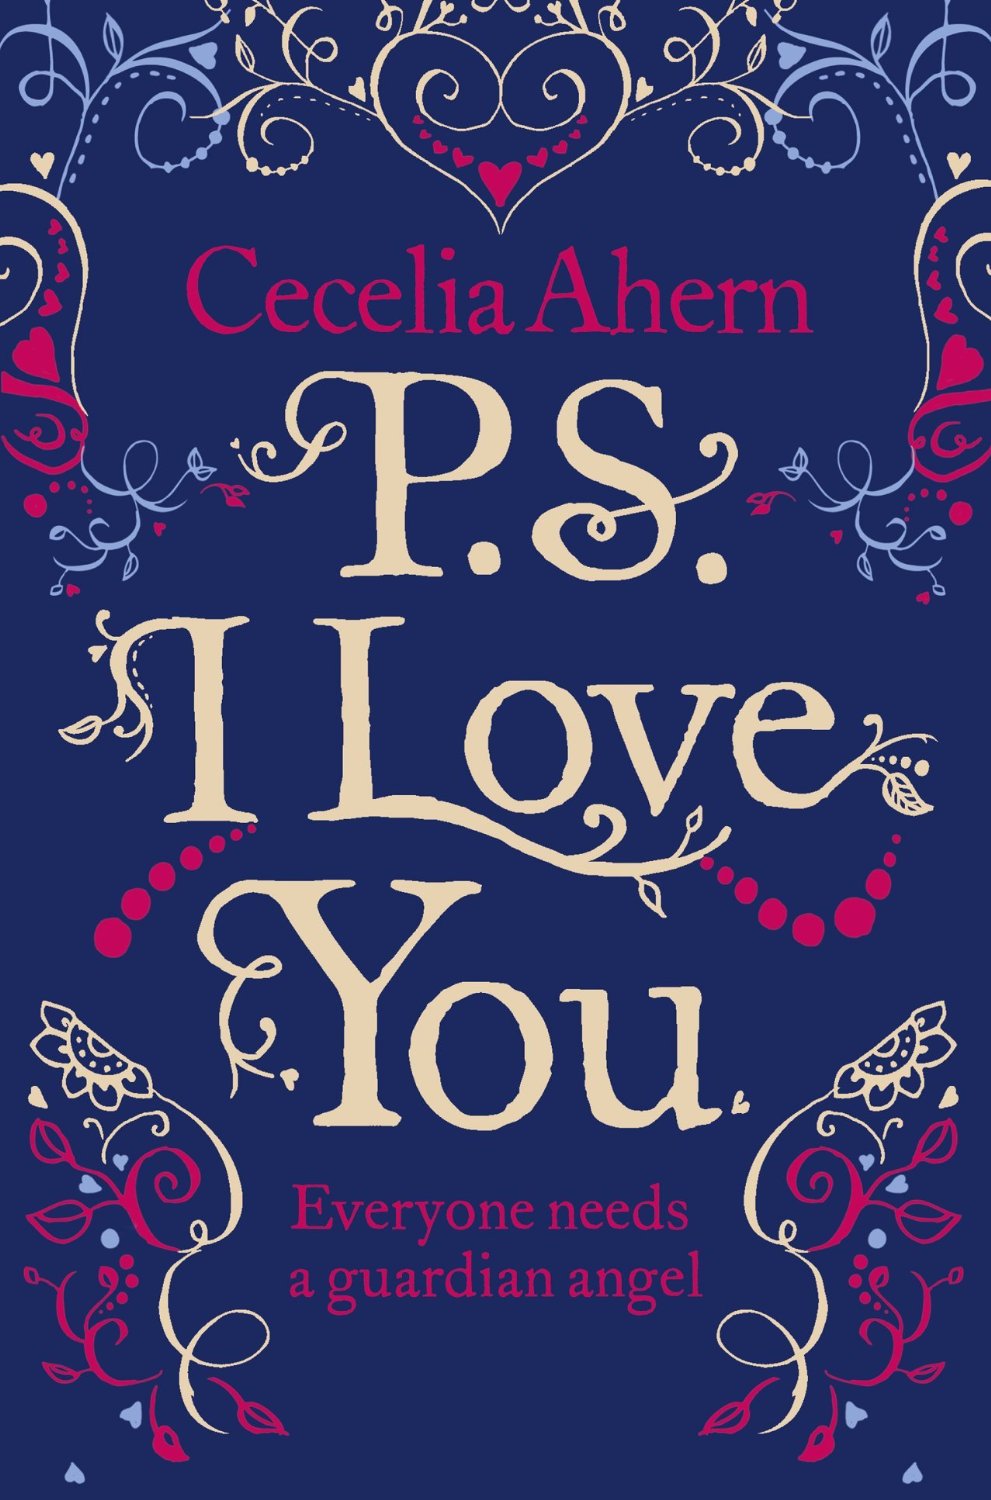 I love книга. Ахерн, с. p.s. i Love you. PS I Love you книга. Книга Ahern, Cecelia p.s. i Love you. P.S. I Love you обложка книги.